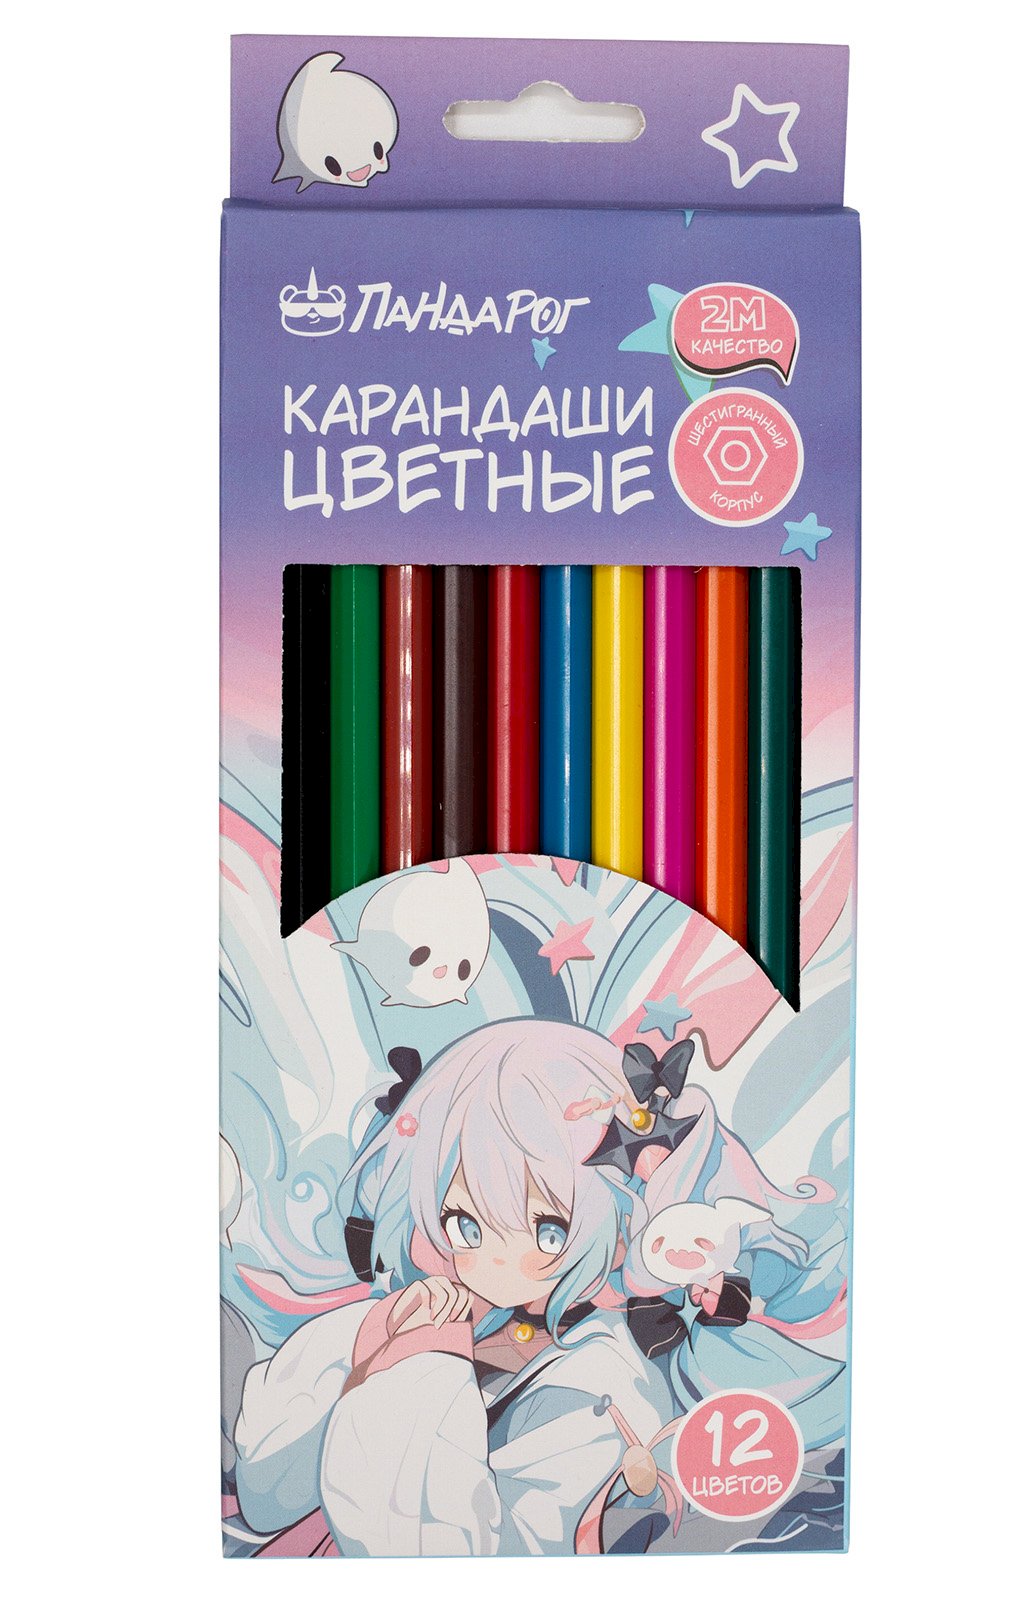 Карандаши цветные ПандаРог Anime Girl, 12  цветов, пластиковые, шестигранные